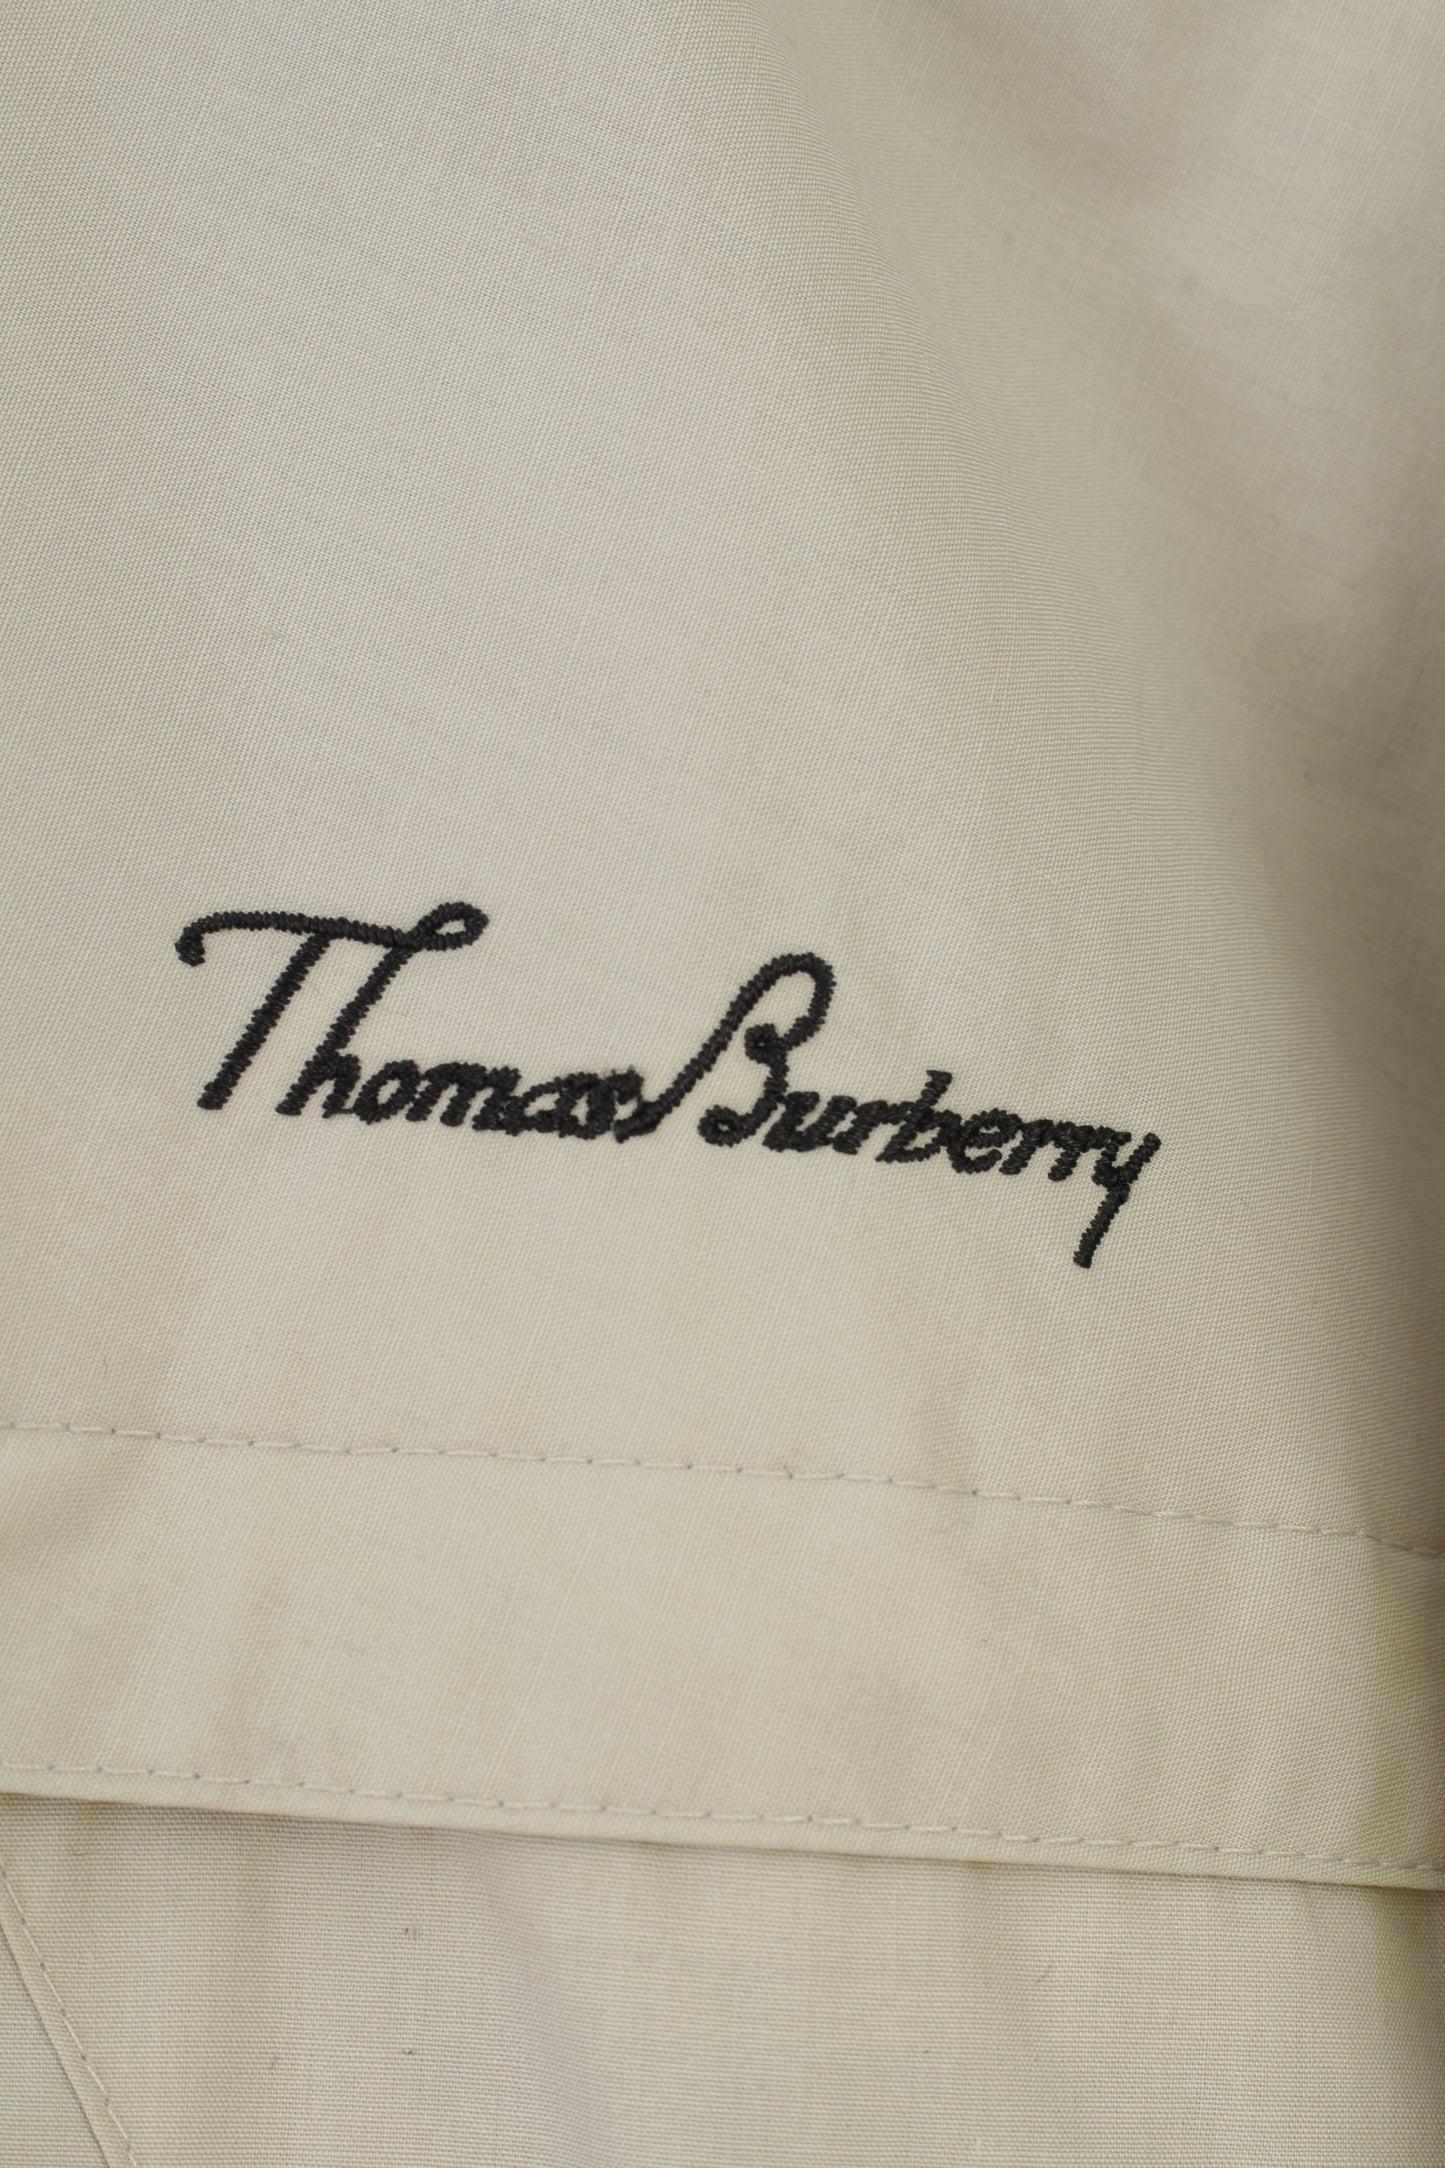 Thomas Burberry Giacca da uomo L Beige con cerniera intera Cappuccio vintage Top